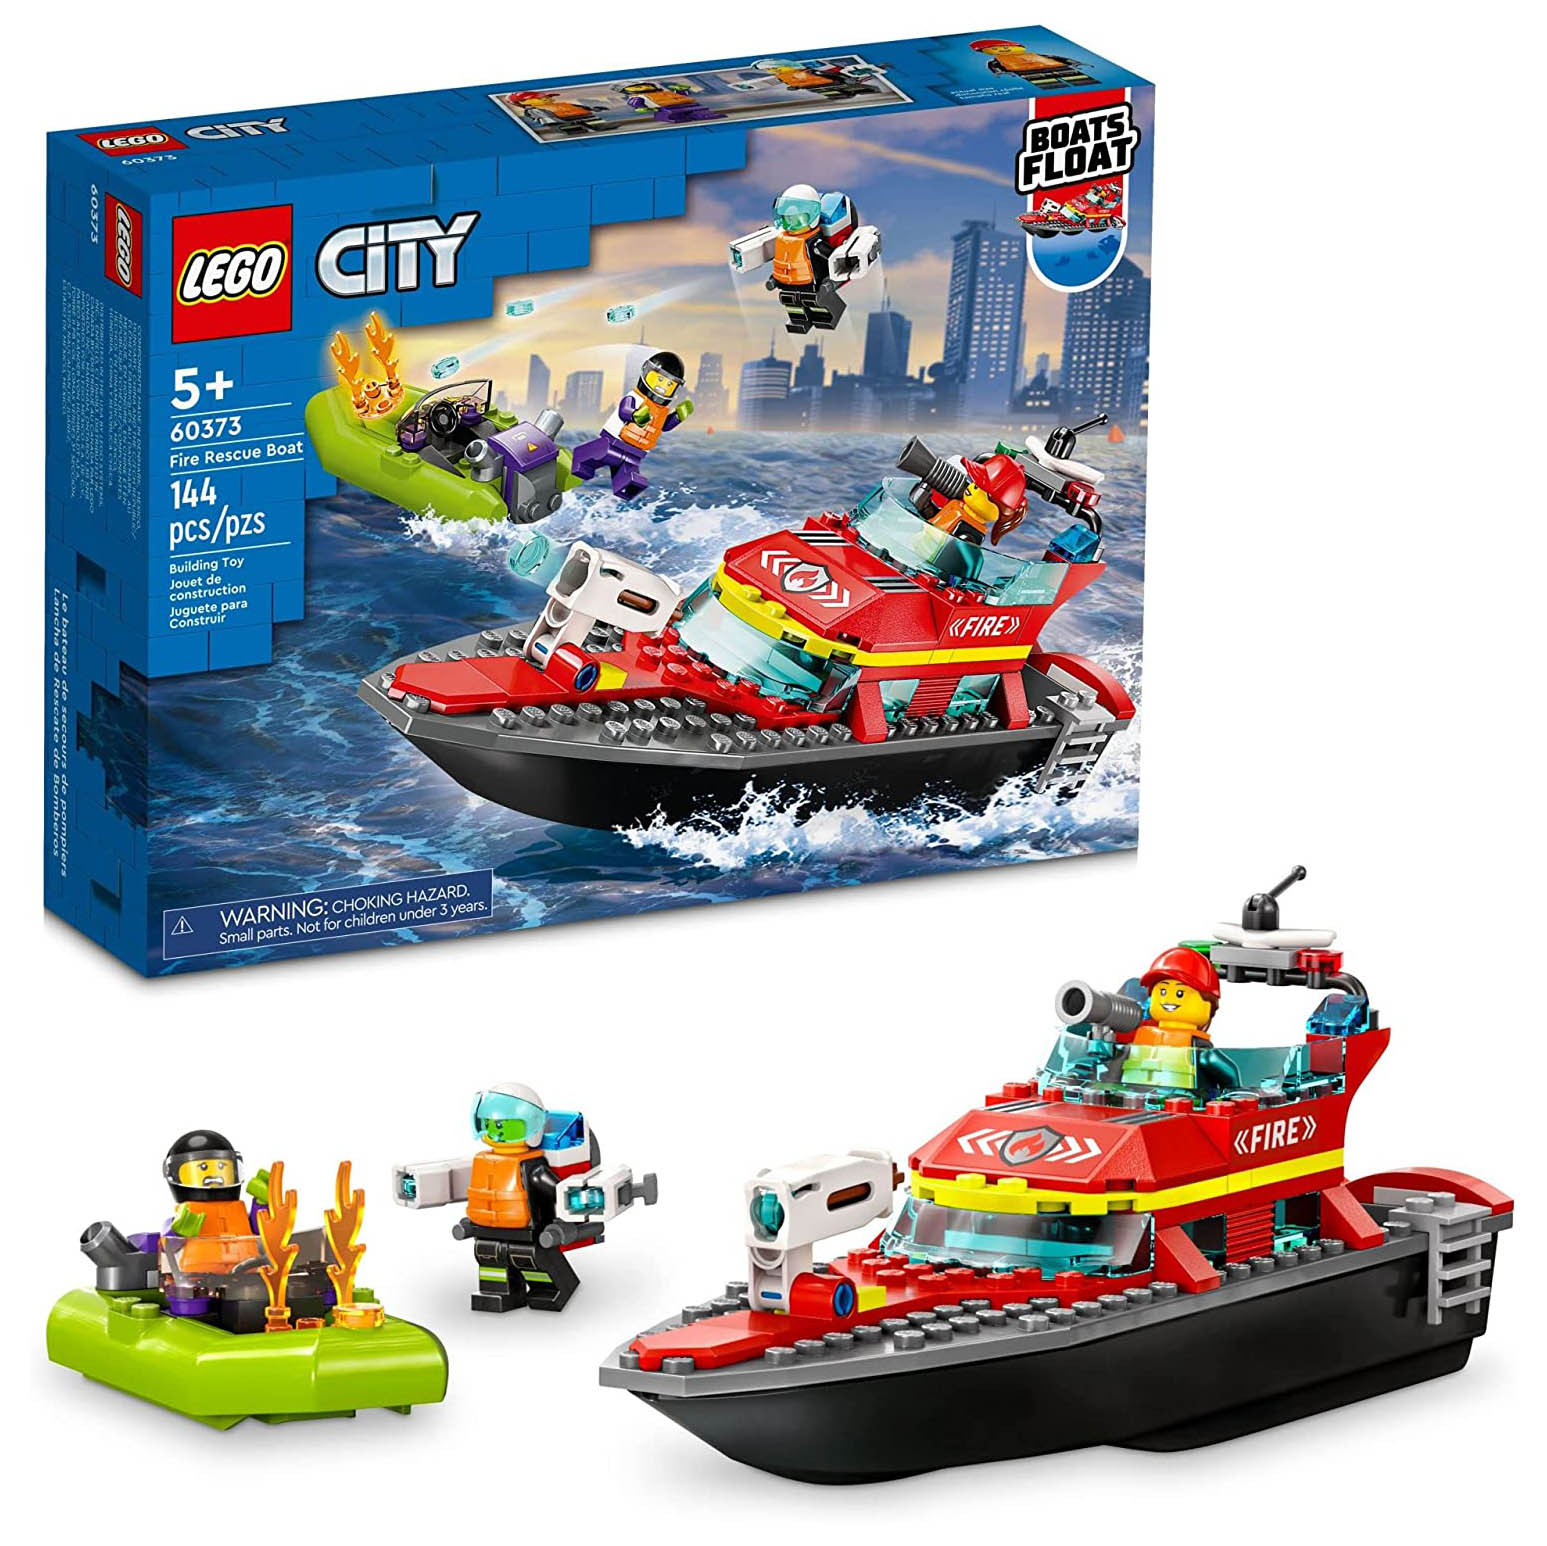 Конструктор LEGO City Пожарная спасательная лодка, 144 детали, 60373